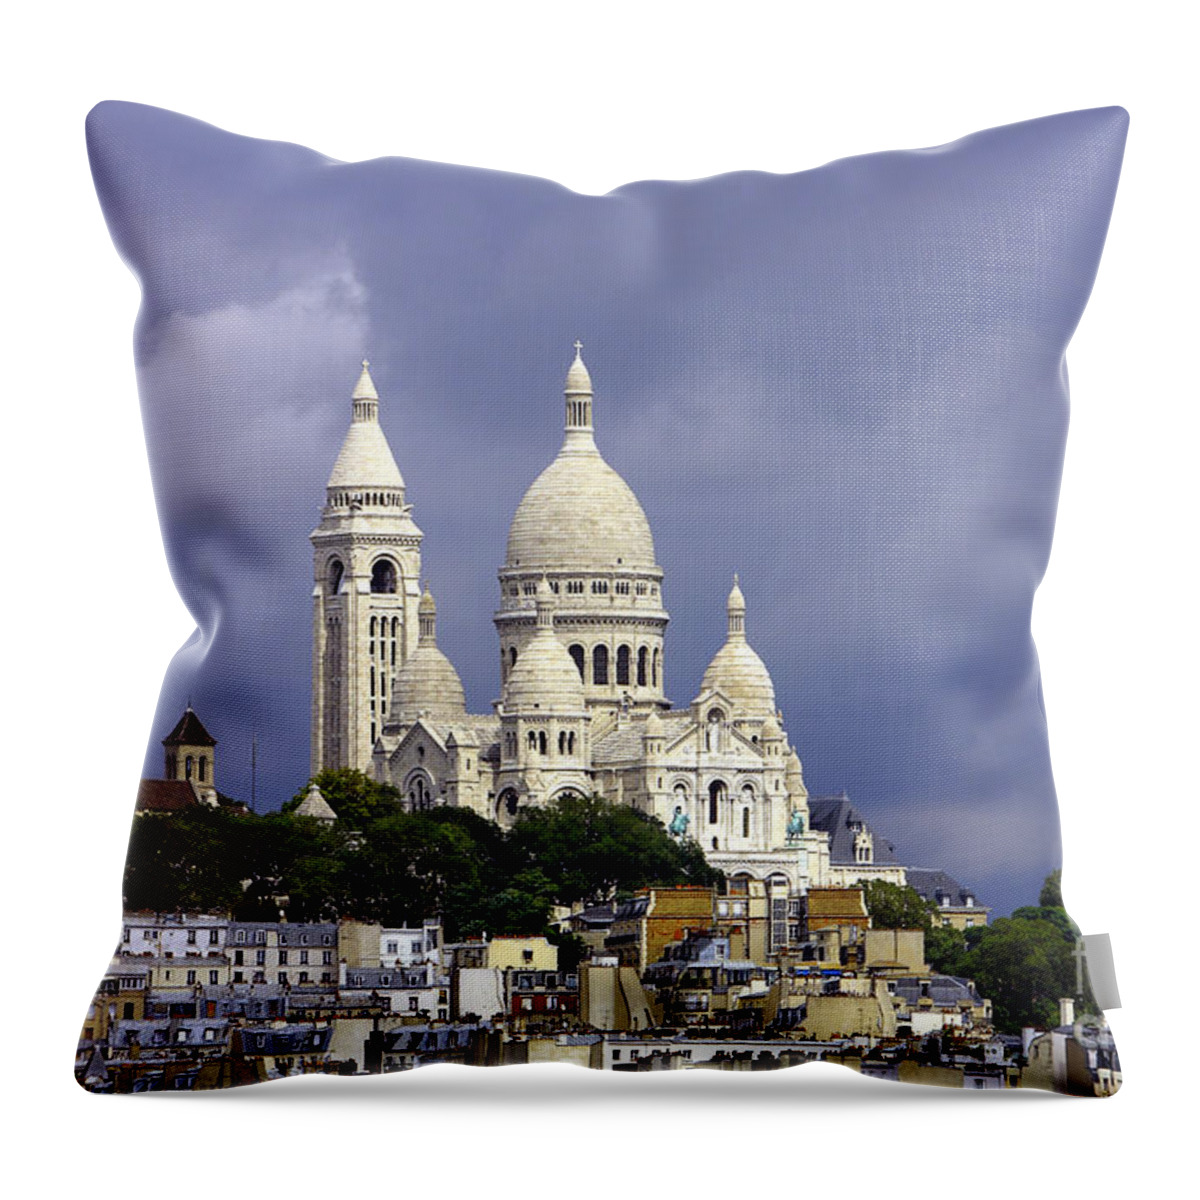 Paris Throw Pillow featuring the photograph Sacre Coeur Paris France by Robert L Lease Images Lumiere De Liesse Ltd